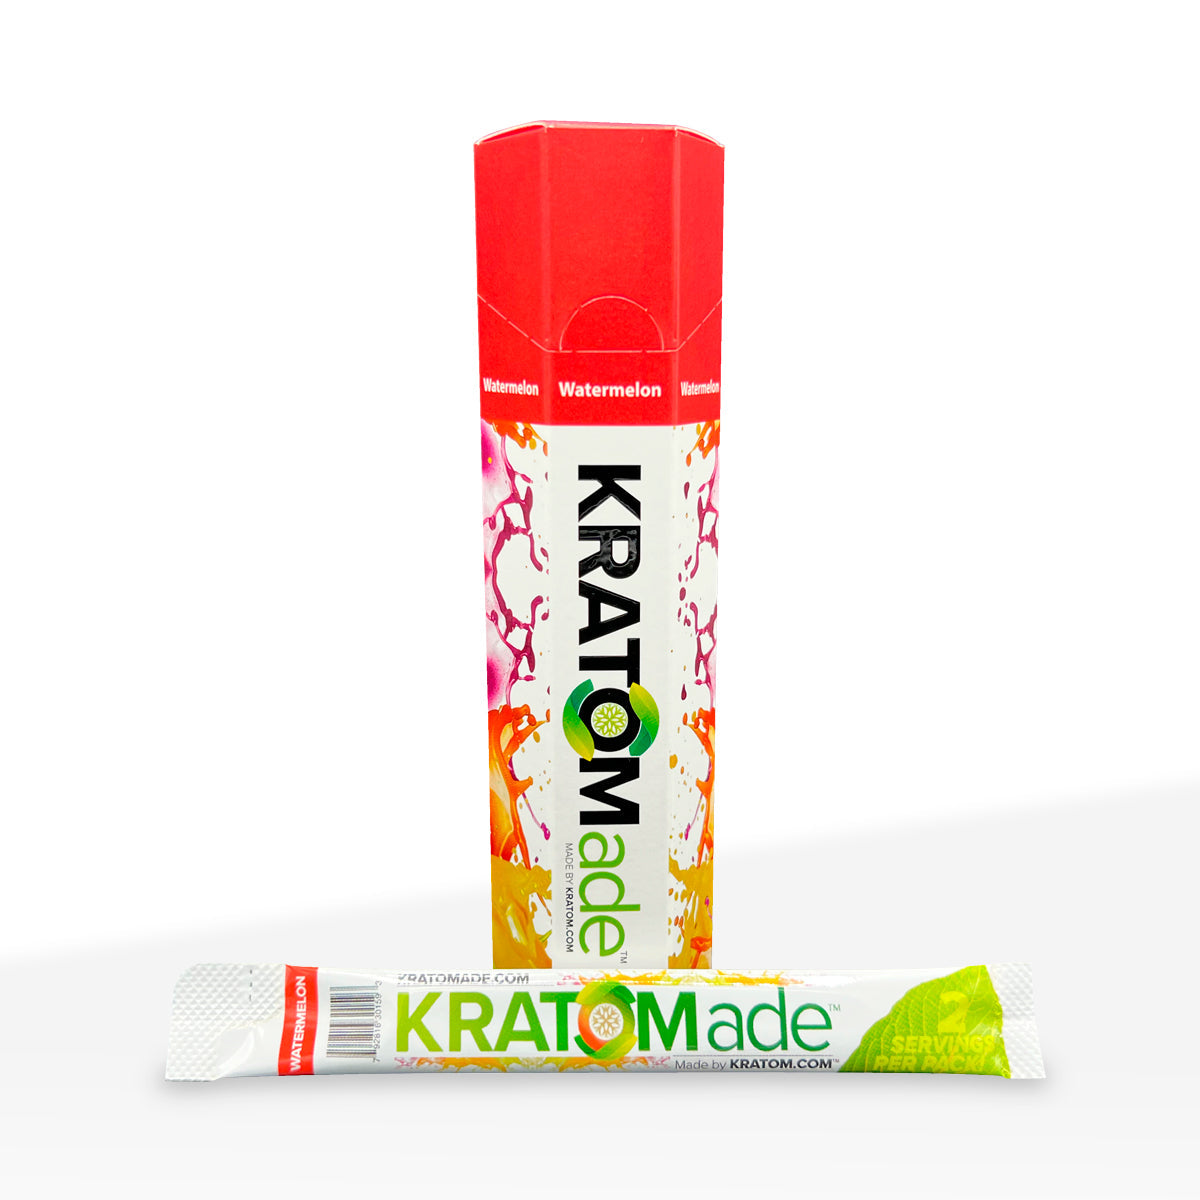 KratomADE Kratom 100mg Powder in Watermelon